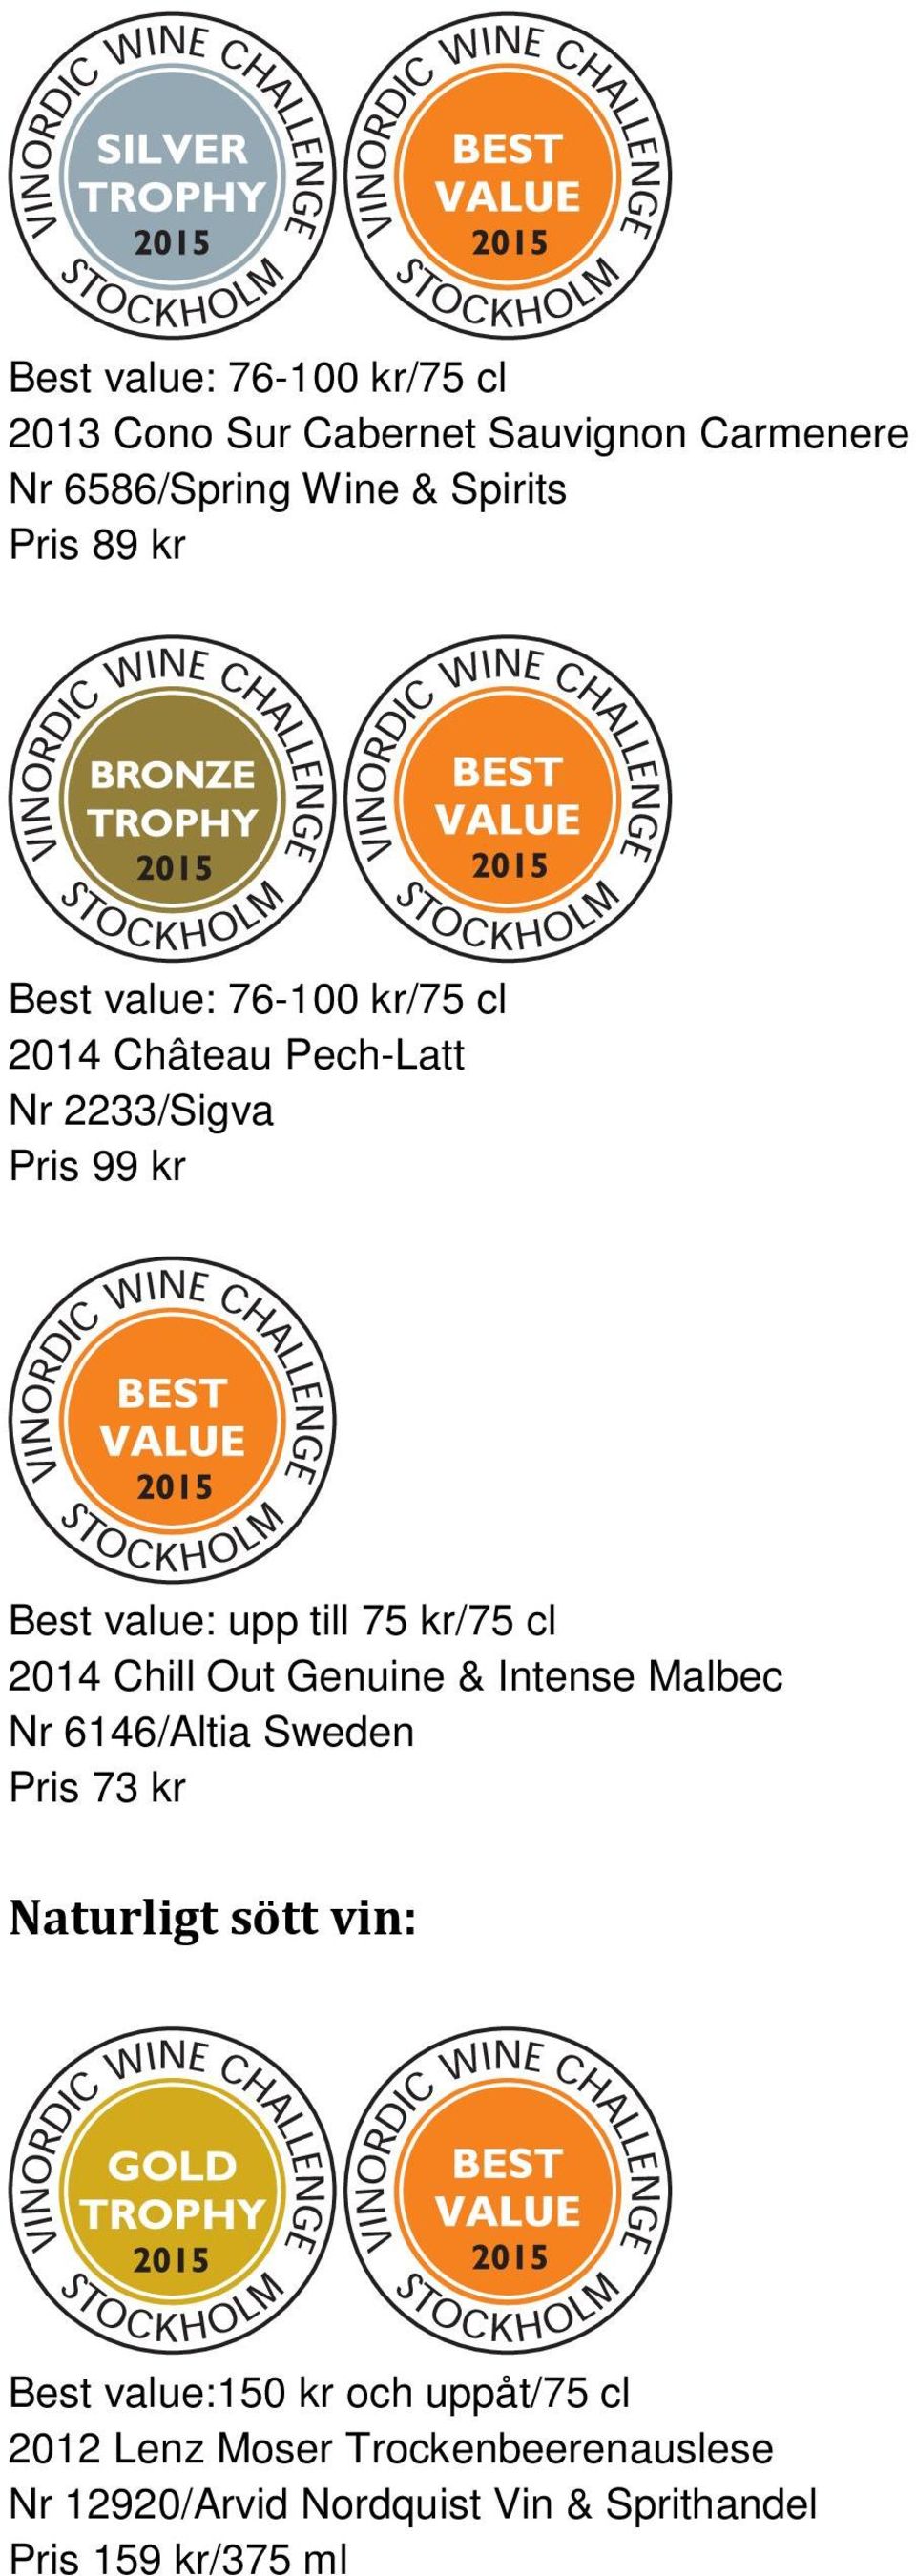 2014 Chill Out Genuine & Intense Malbec Nr 6146/Altia Sweden Pris 73 kr Naturligt sött vin: Best value:150 kr